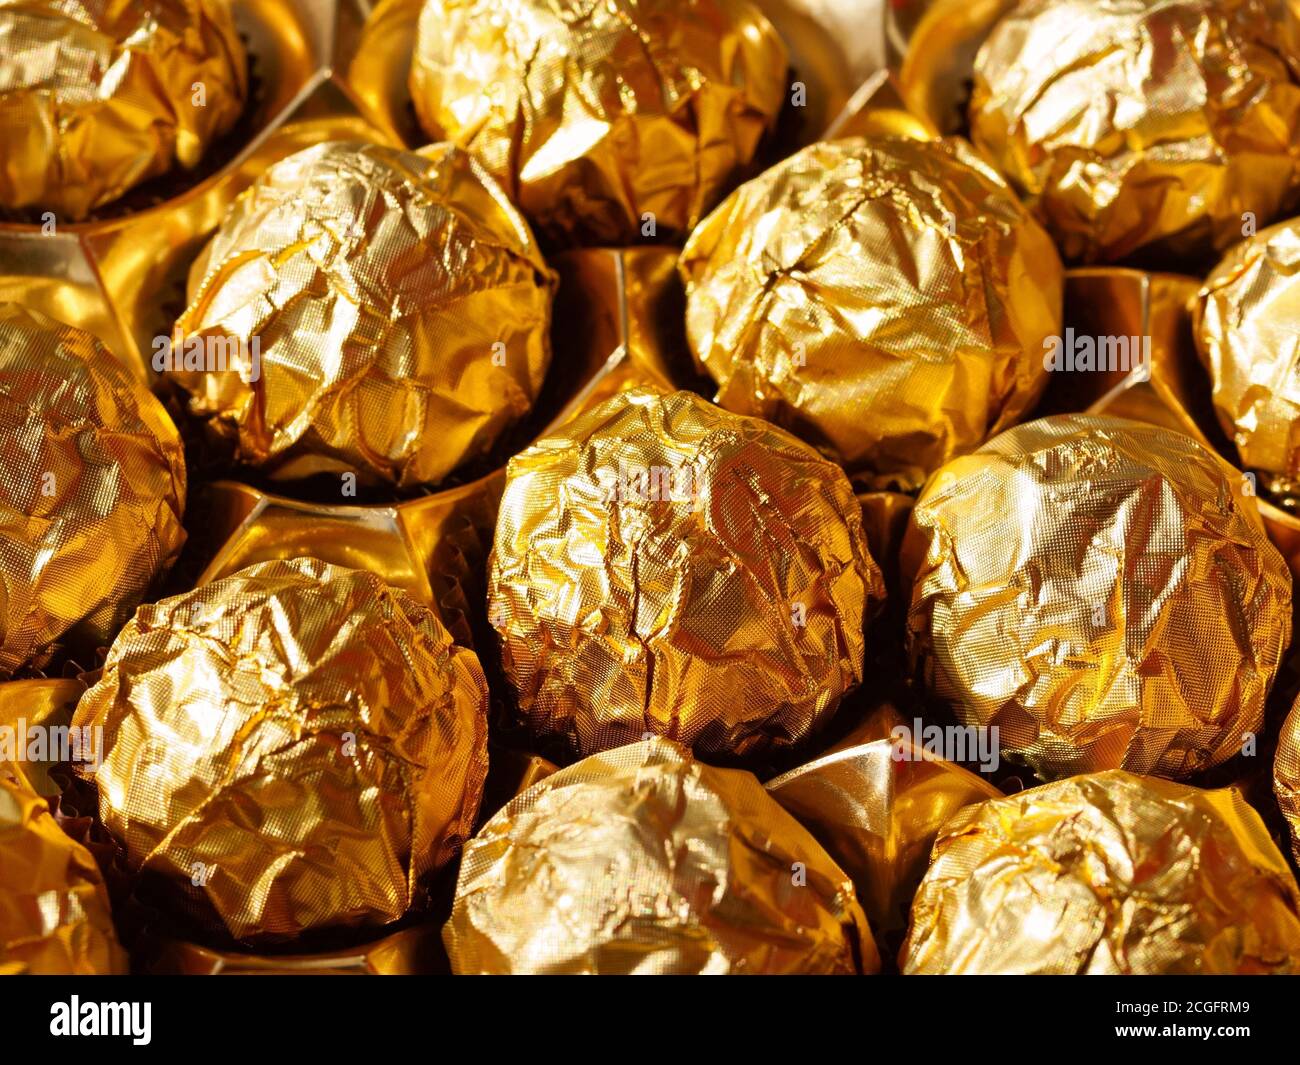 Schokolade Bonbons in einer Goldverpackung, süße Schokolade Bonbons. Der  Blick von oben Stockfotografie - Alamy